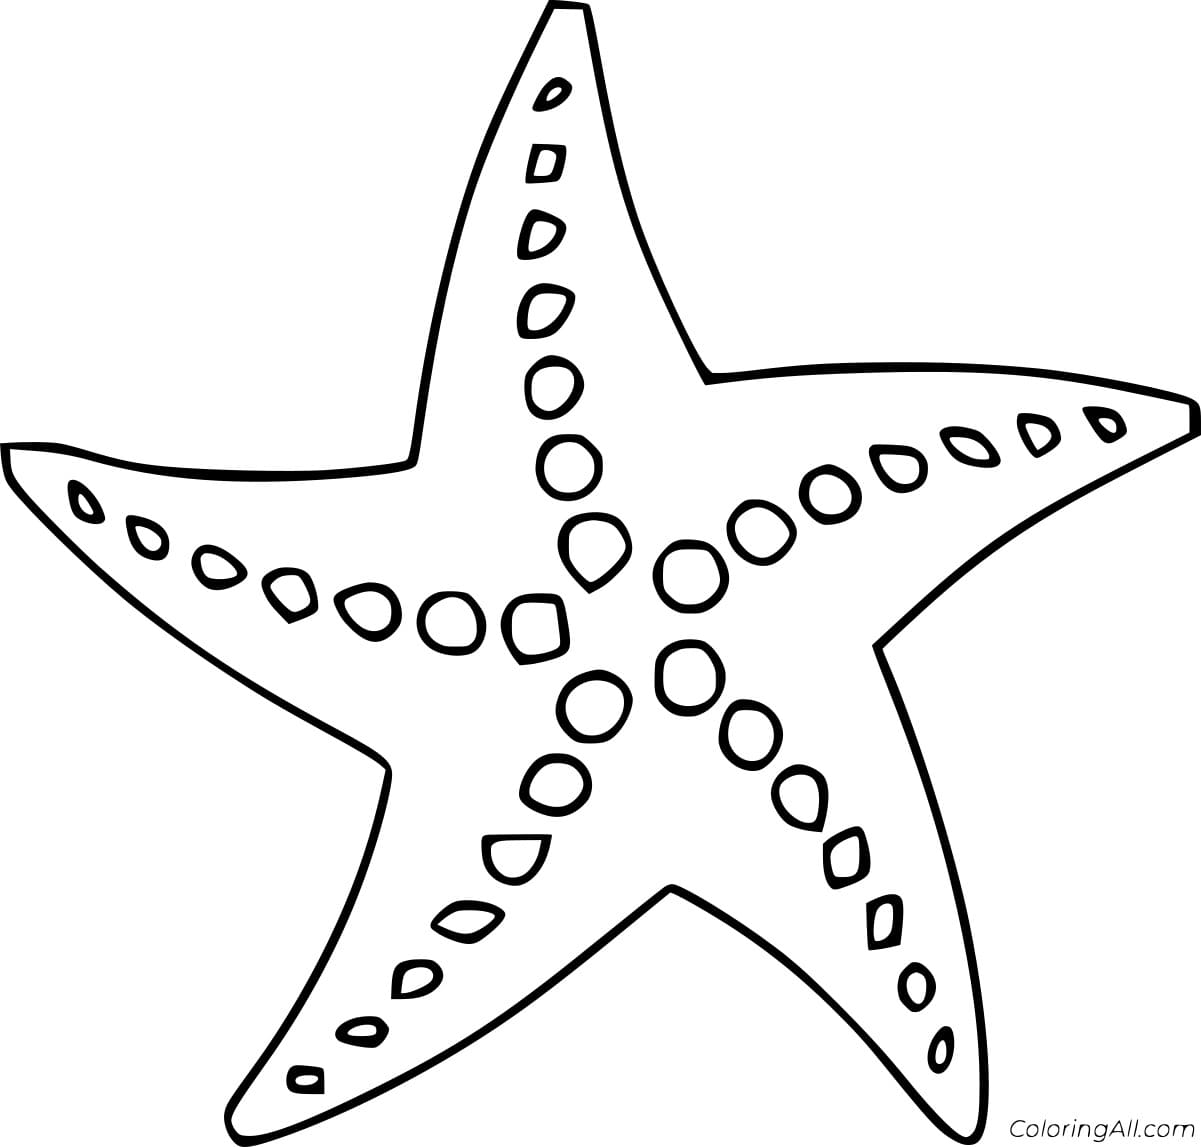 Circle Starfish Image Coloring Page